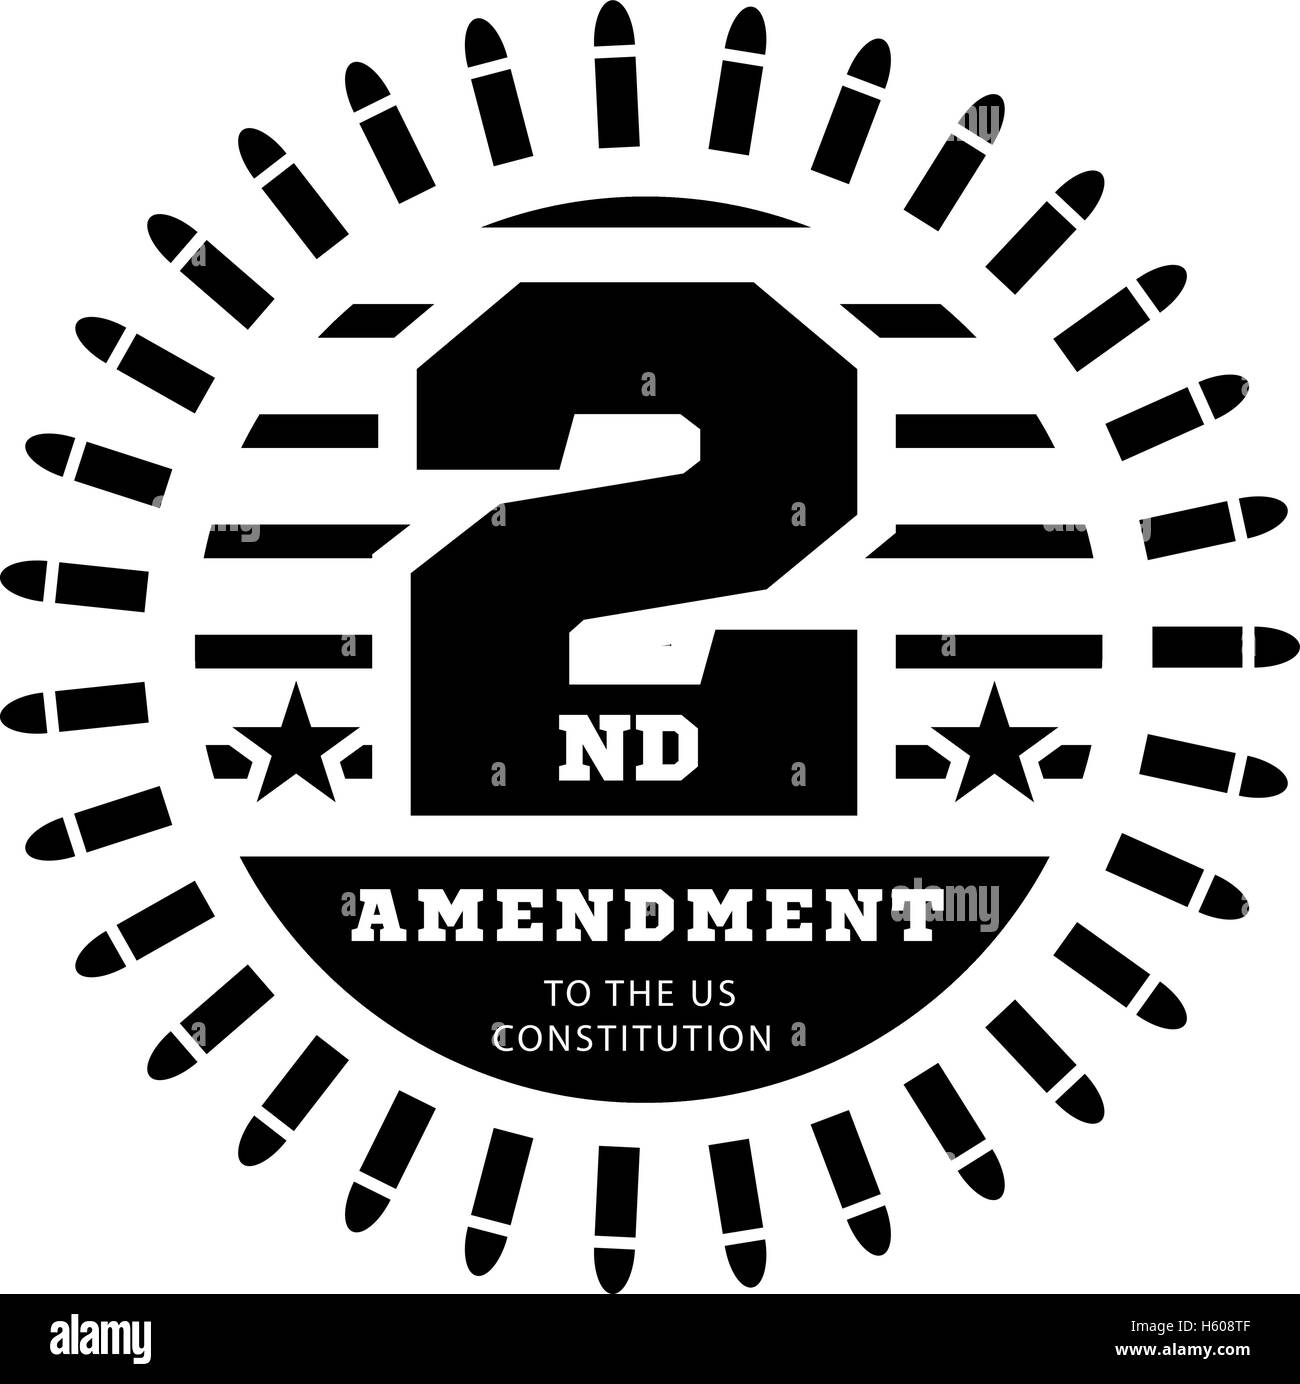 Zweite Änderung der US-Verfassung zum Besitz von Waffen zu ermöglichen. Vektor-illustration Stock Vektor